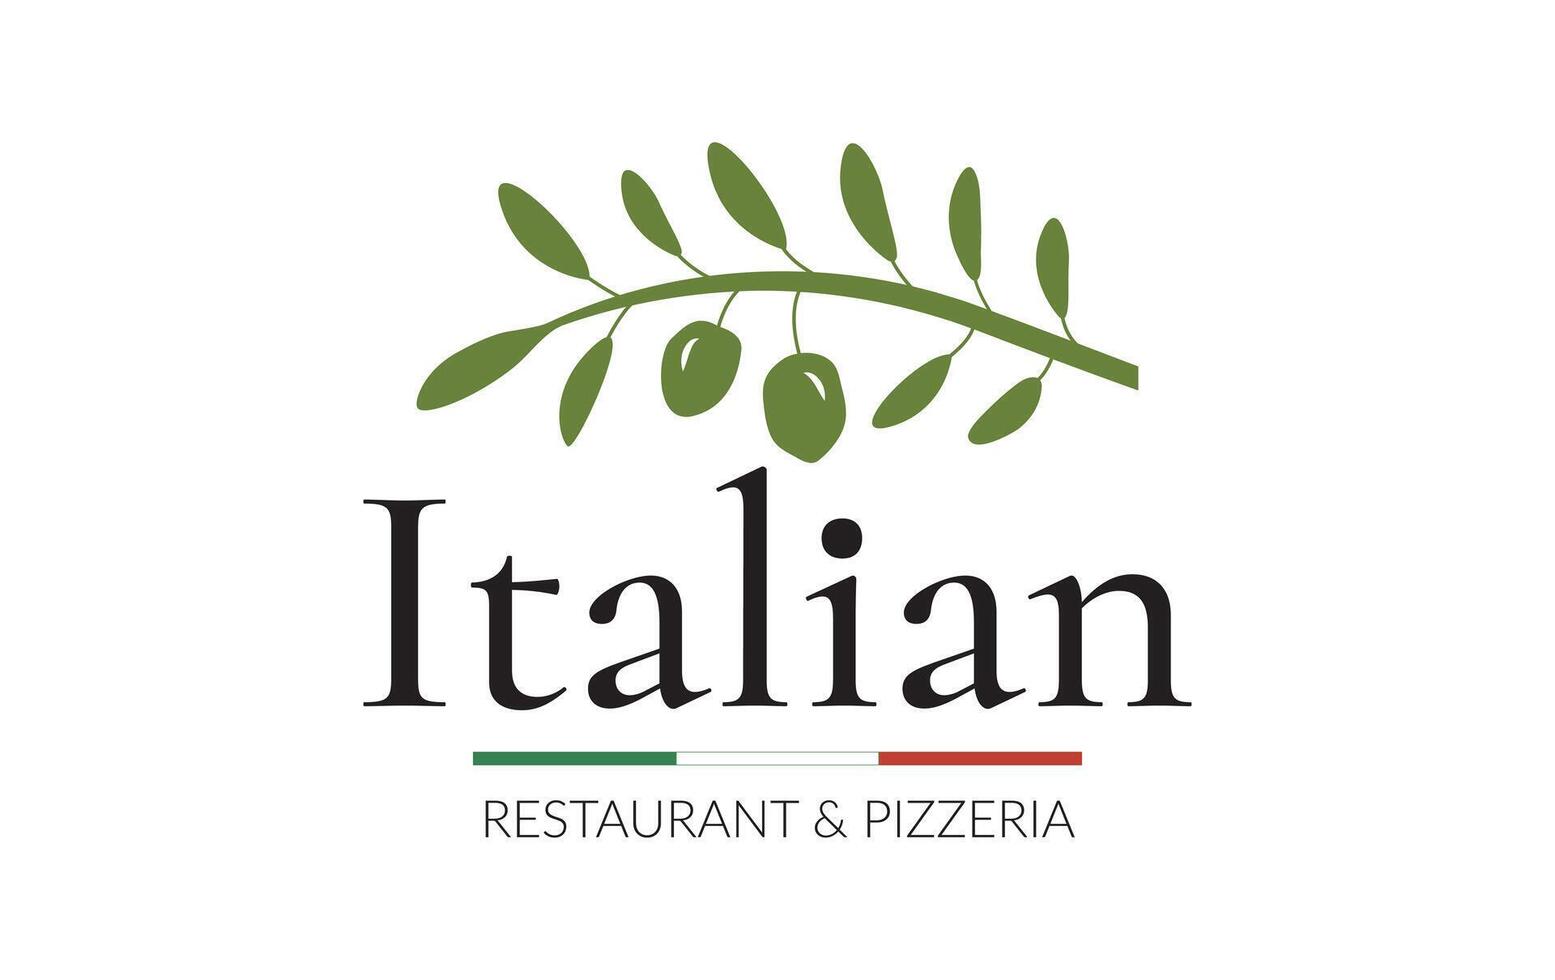 groen Italiaans restaurant en pizzeria logo met olijven vector